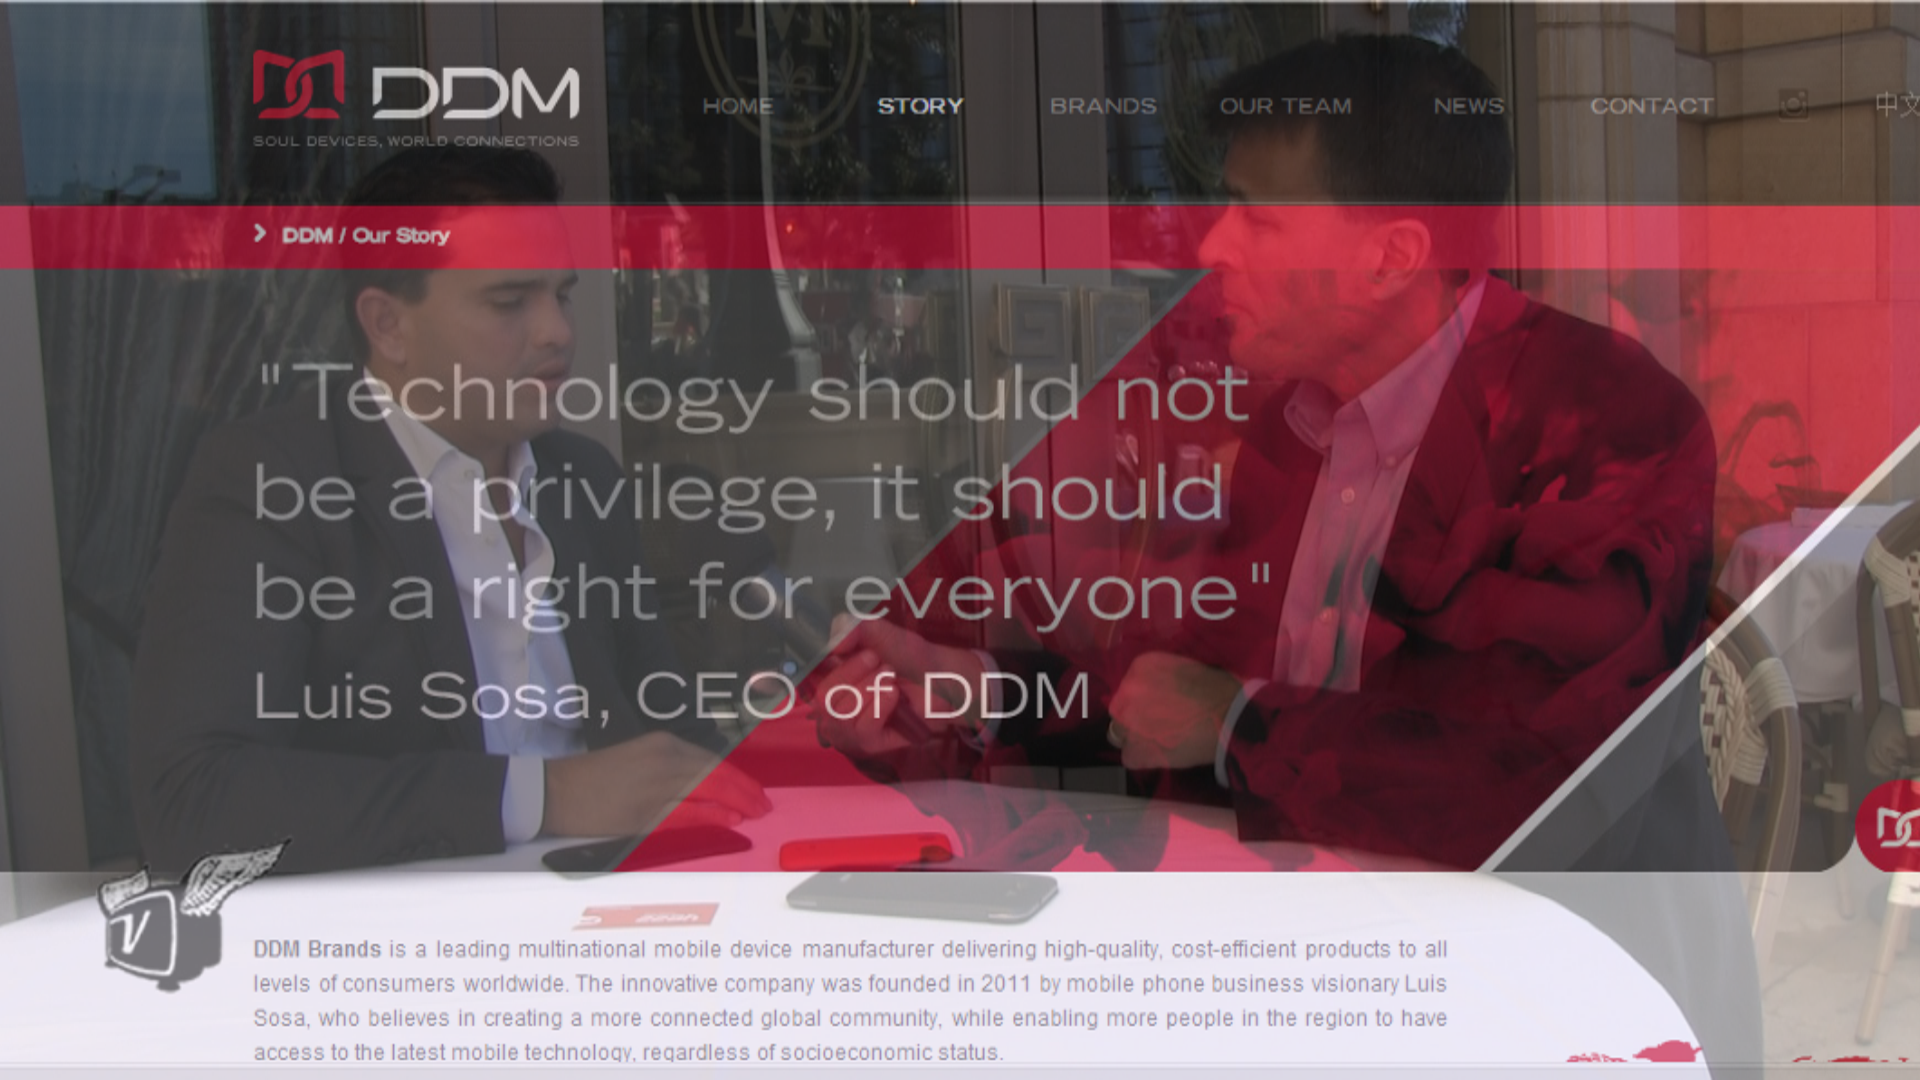 Ken Pyle interviews Luis Sosa of DDM Brands at CES 2014.